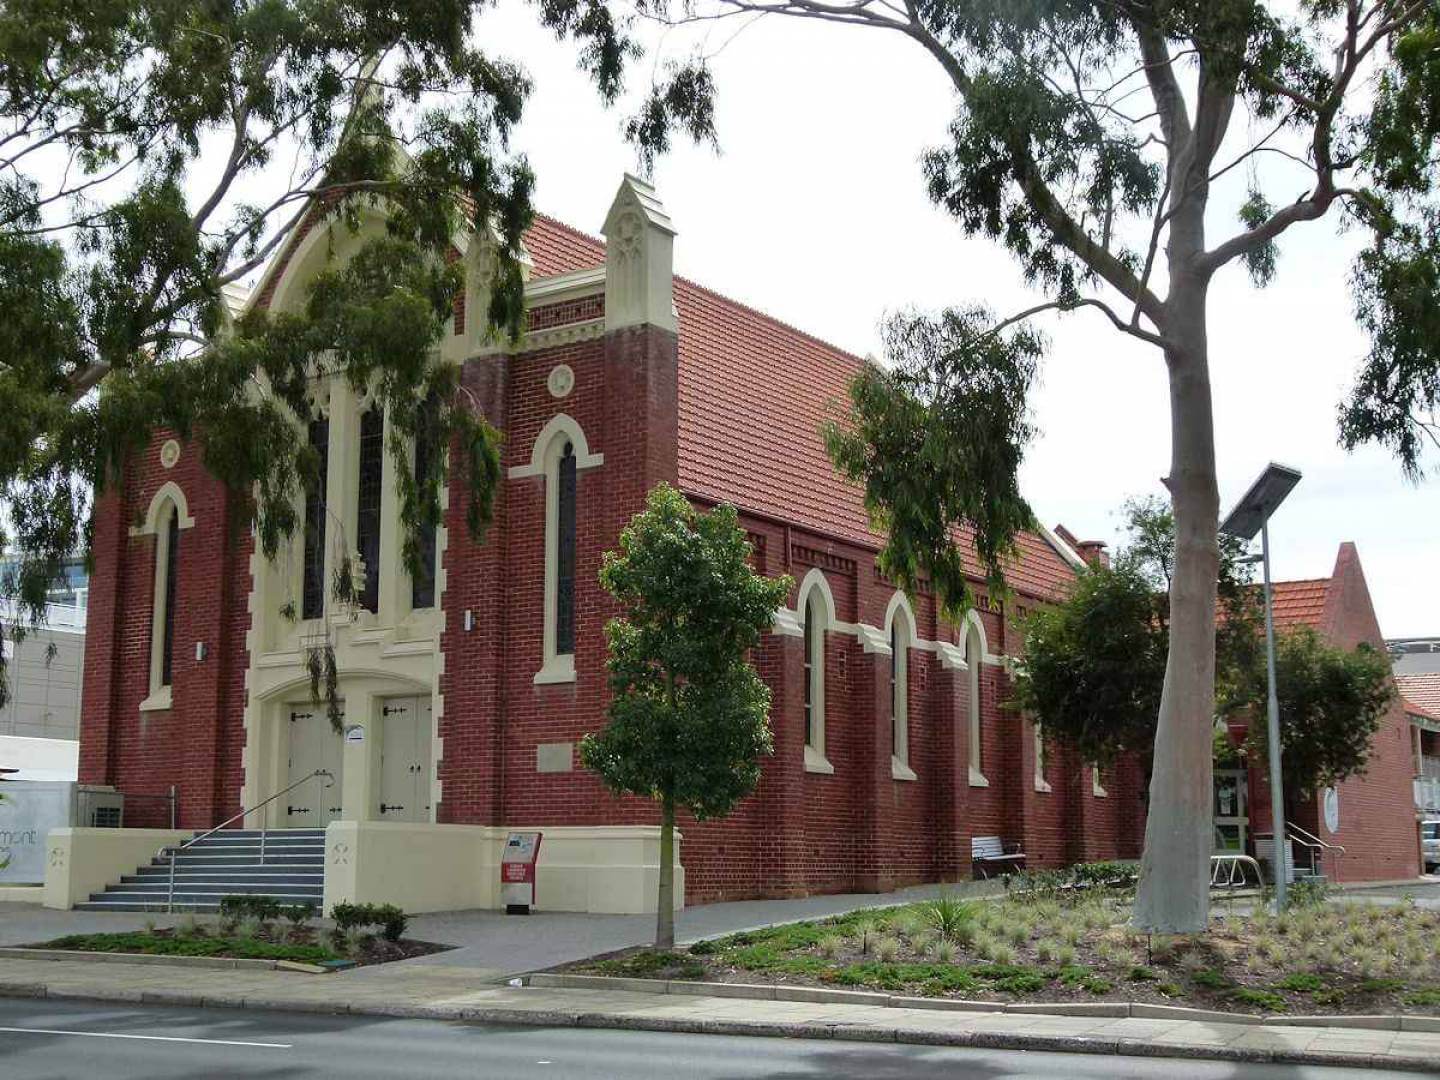 Claremont Methodist Church - Former